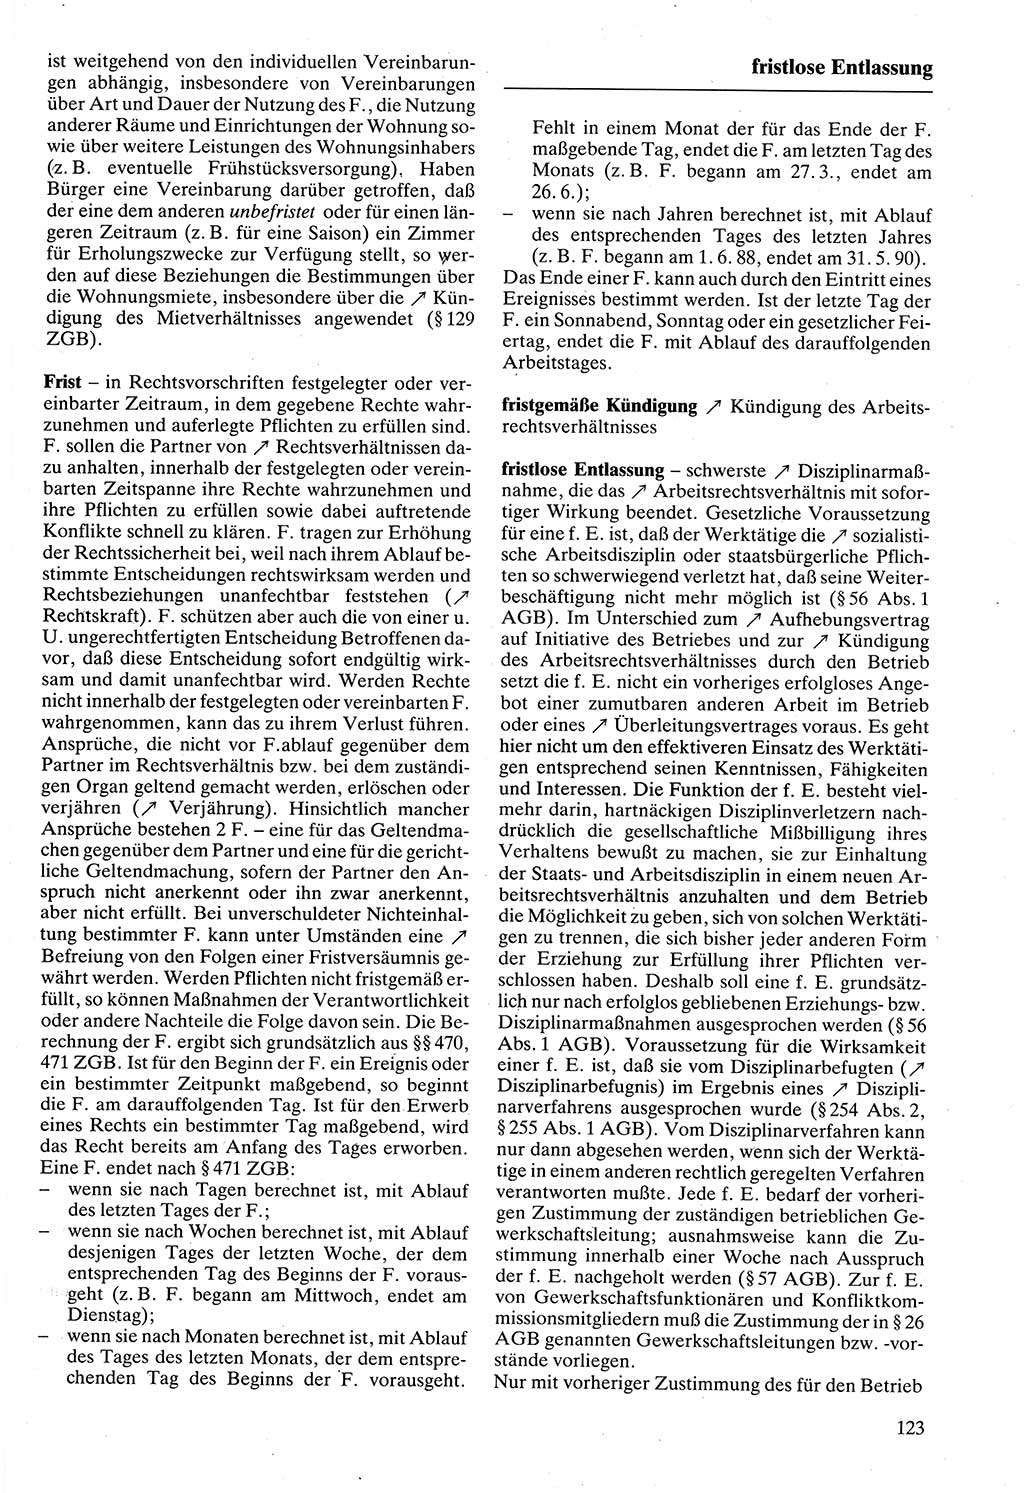 Rechtslexikon [Deutsche Demokratische Republik (DDR)] 1988, Seite 123 (Rechtslex. DDR 1988, S. 123)